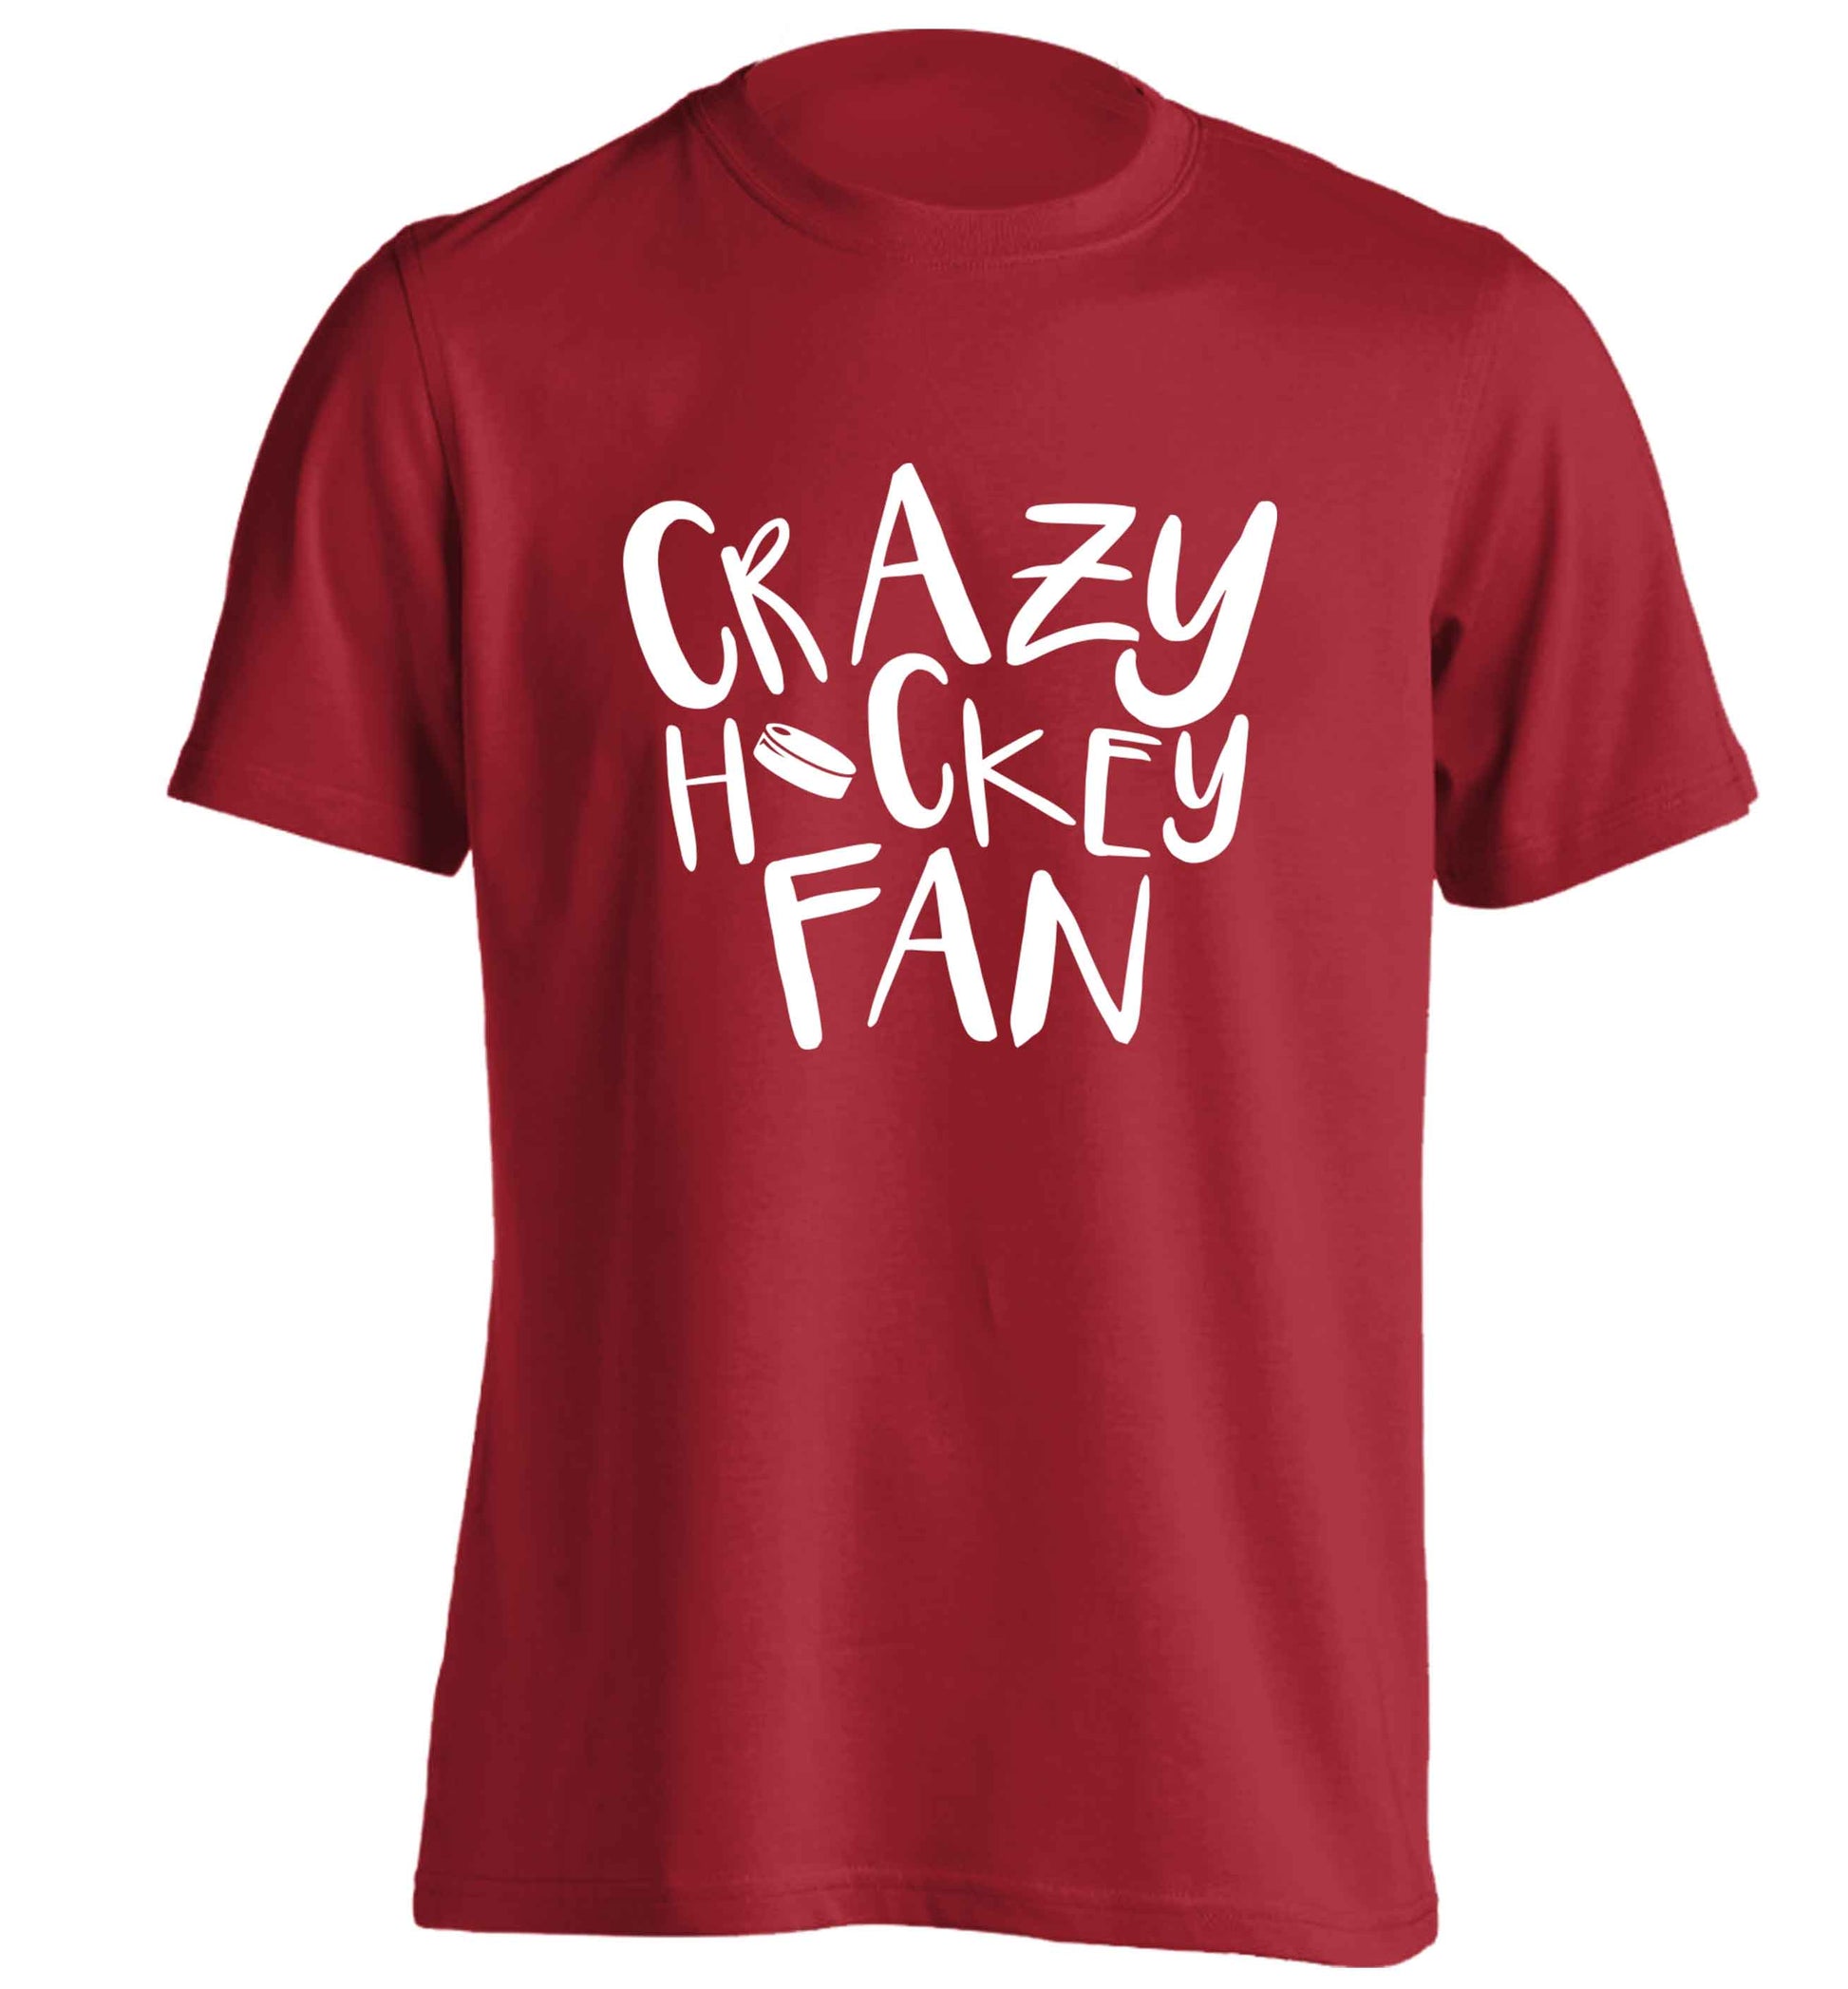 Crazy hockey fan adults unisex red Tshirt 2XL